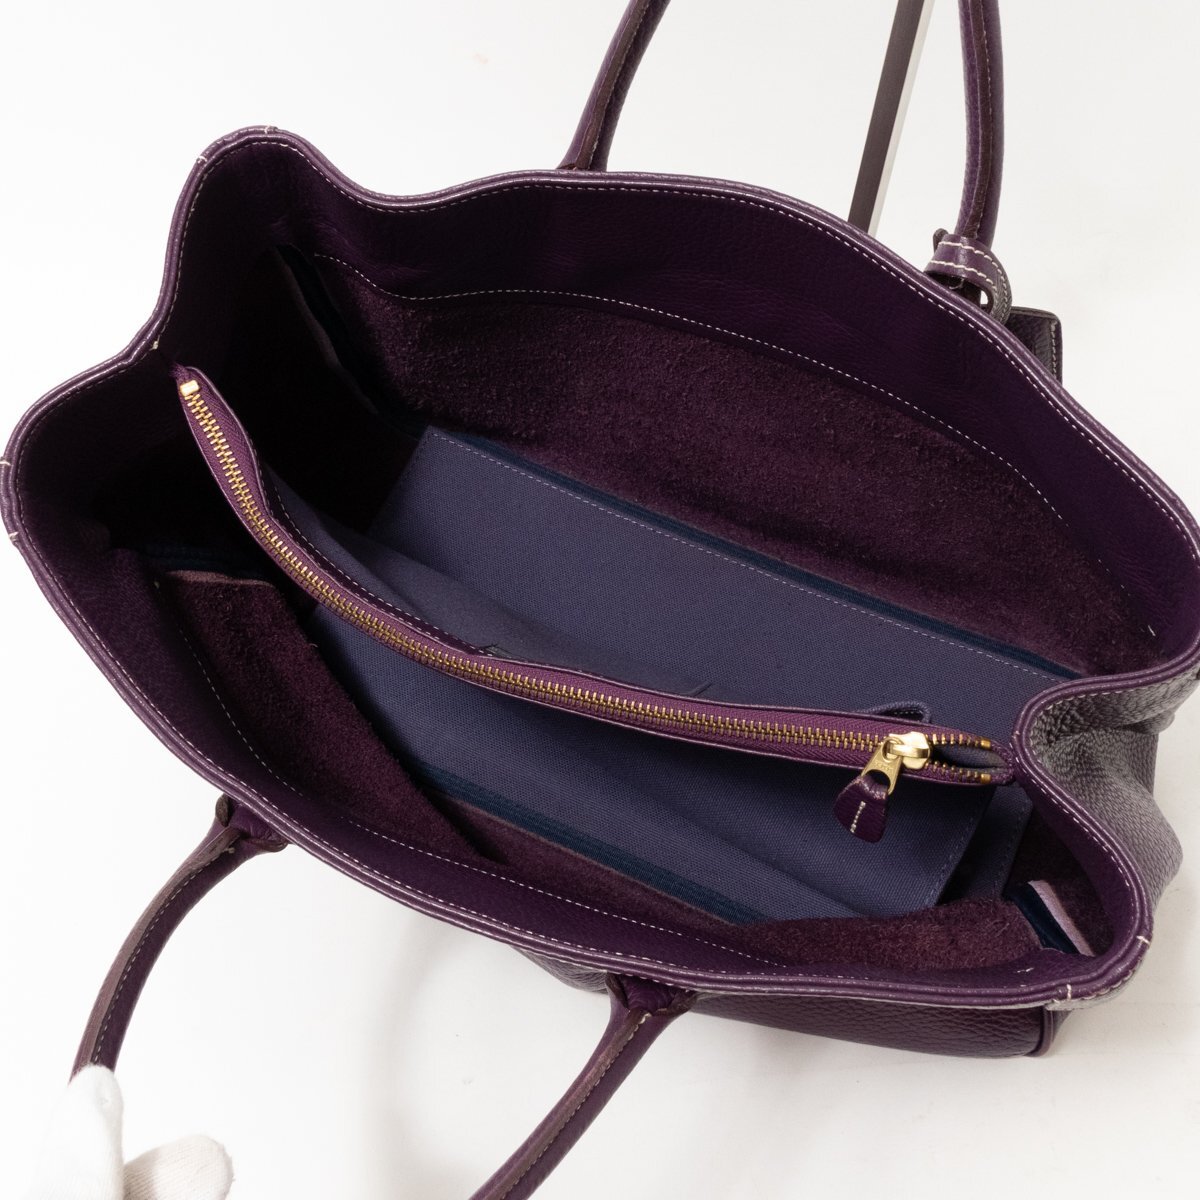 [1 иен старт ]A.D.M.J Accessoires De Mademoiselle аксессуары sowadumadomowazeru большая сумка ручная сумочка сумка лиловый кожа сделано в Японии 